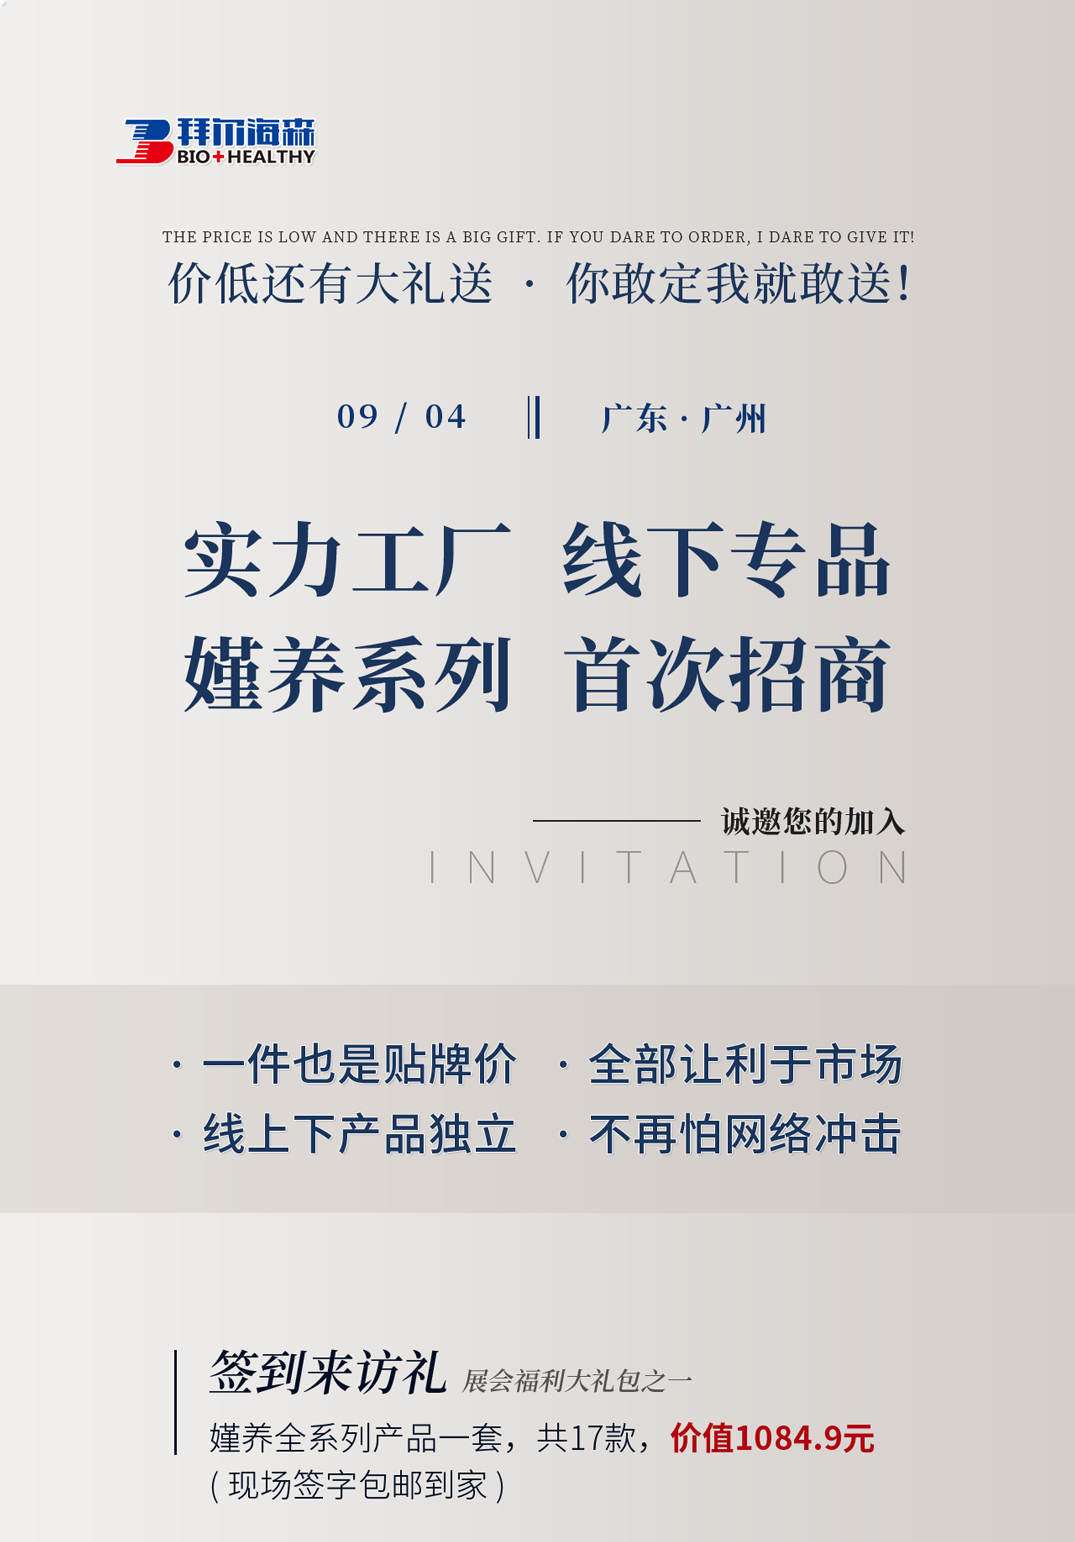 西安拉菲品牌诚邀您参加第62届广州国际美博会